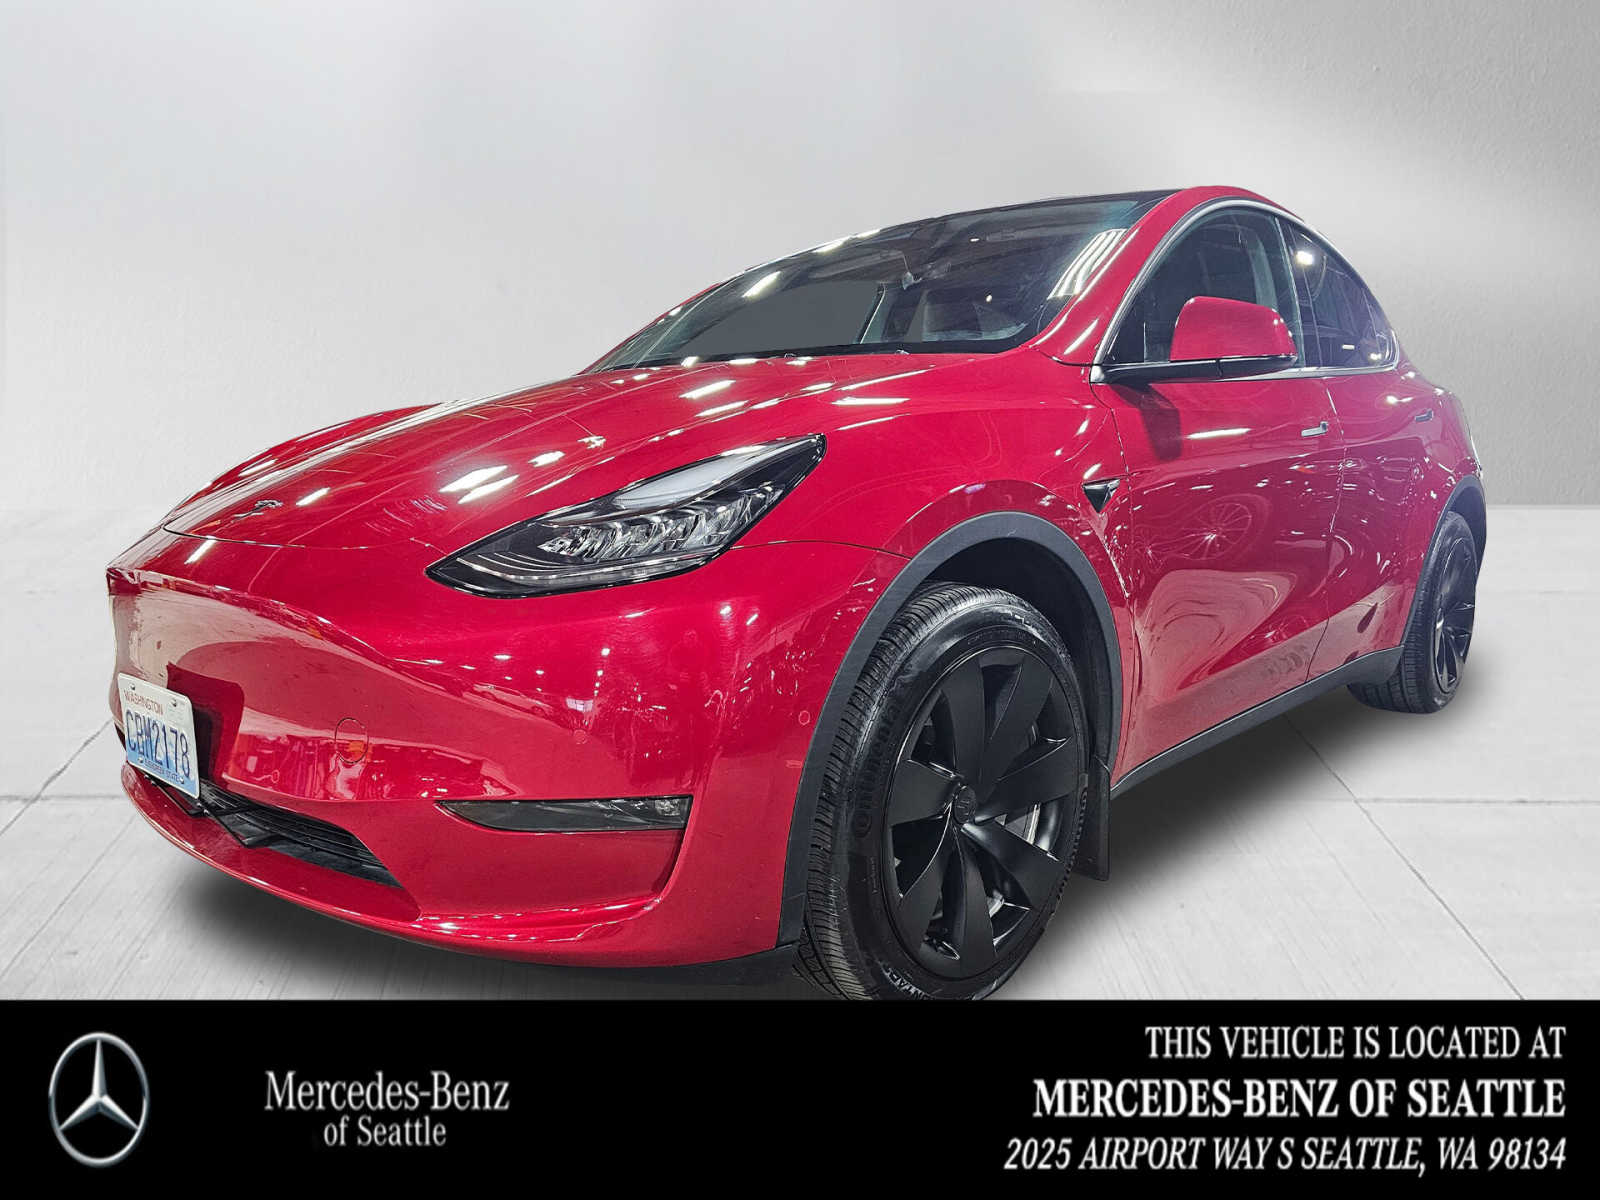 Car Mirror Wiper For Tesla Model S Model X Model Y Model 3 2012